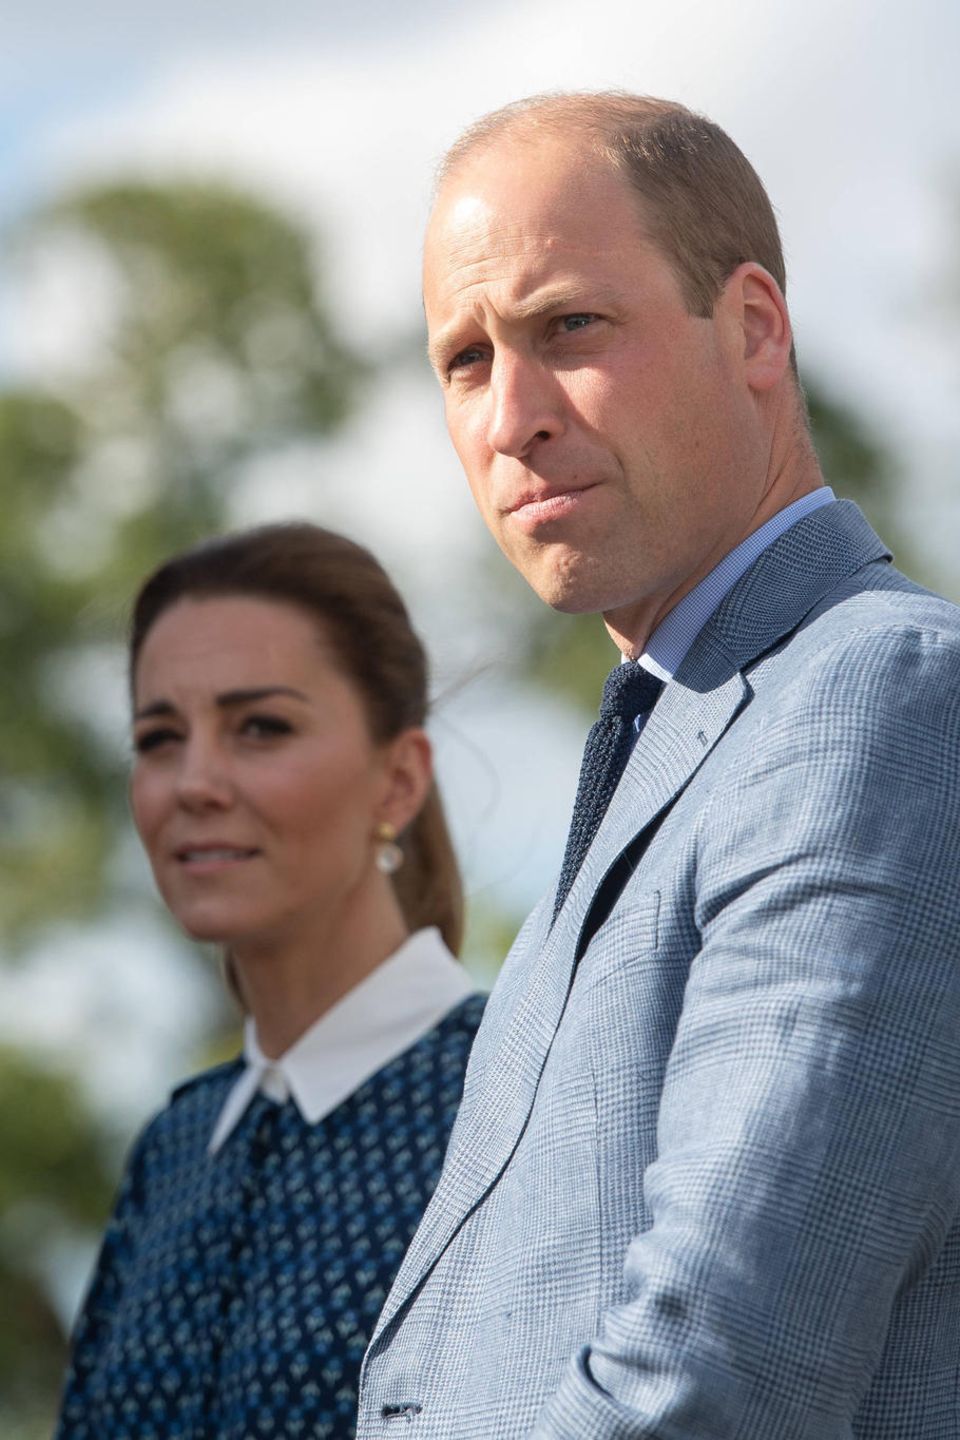 Prinz William und Herzogin Catherine (im Hintergrund)